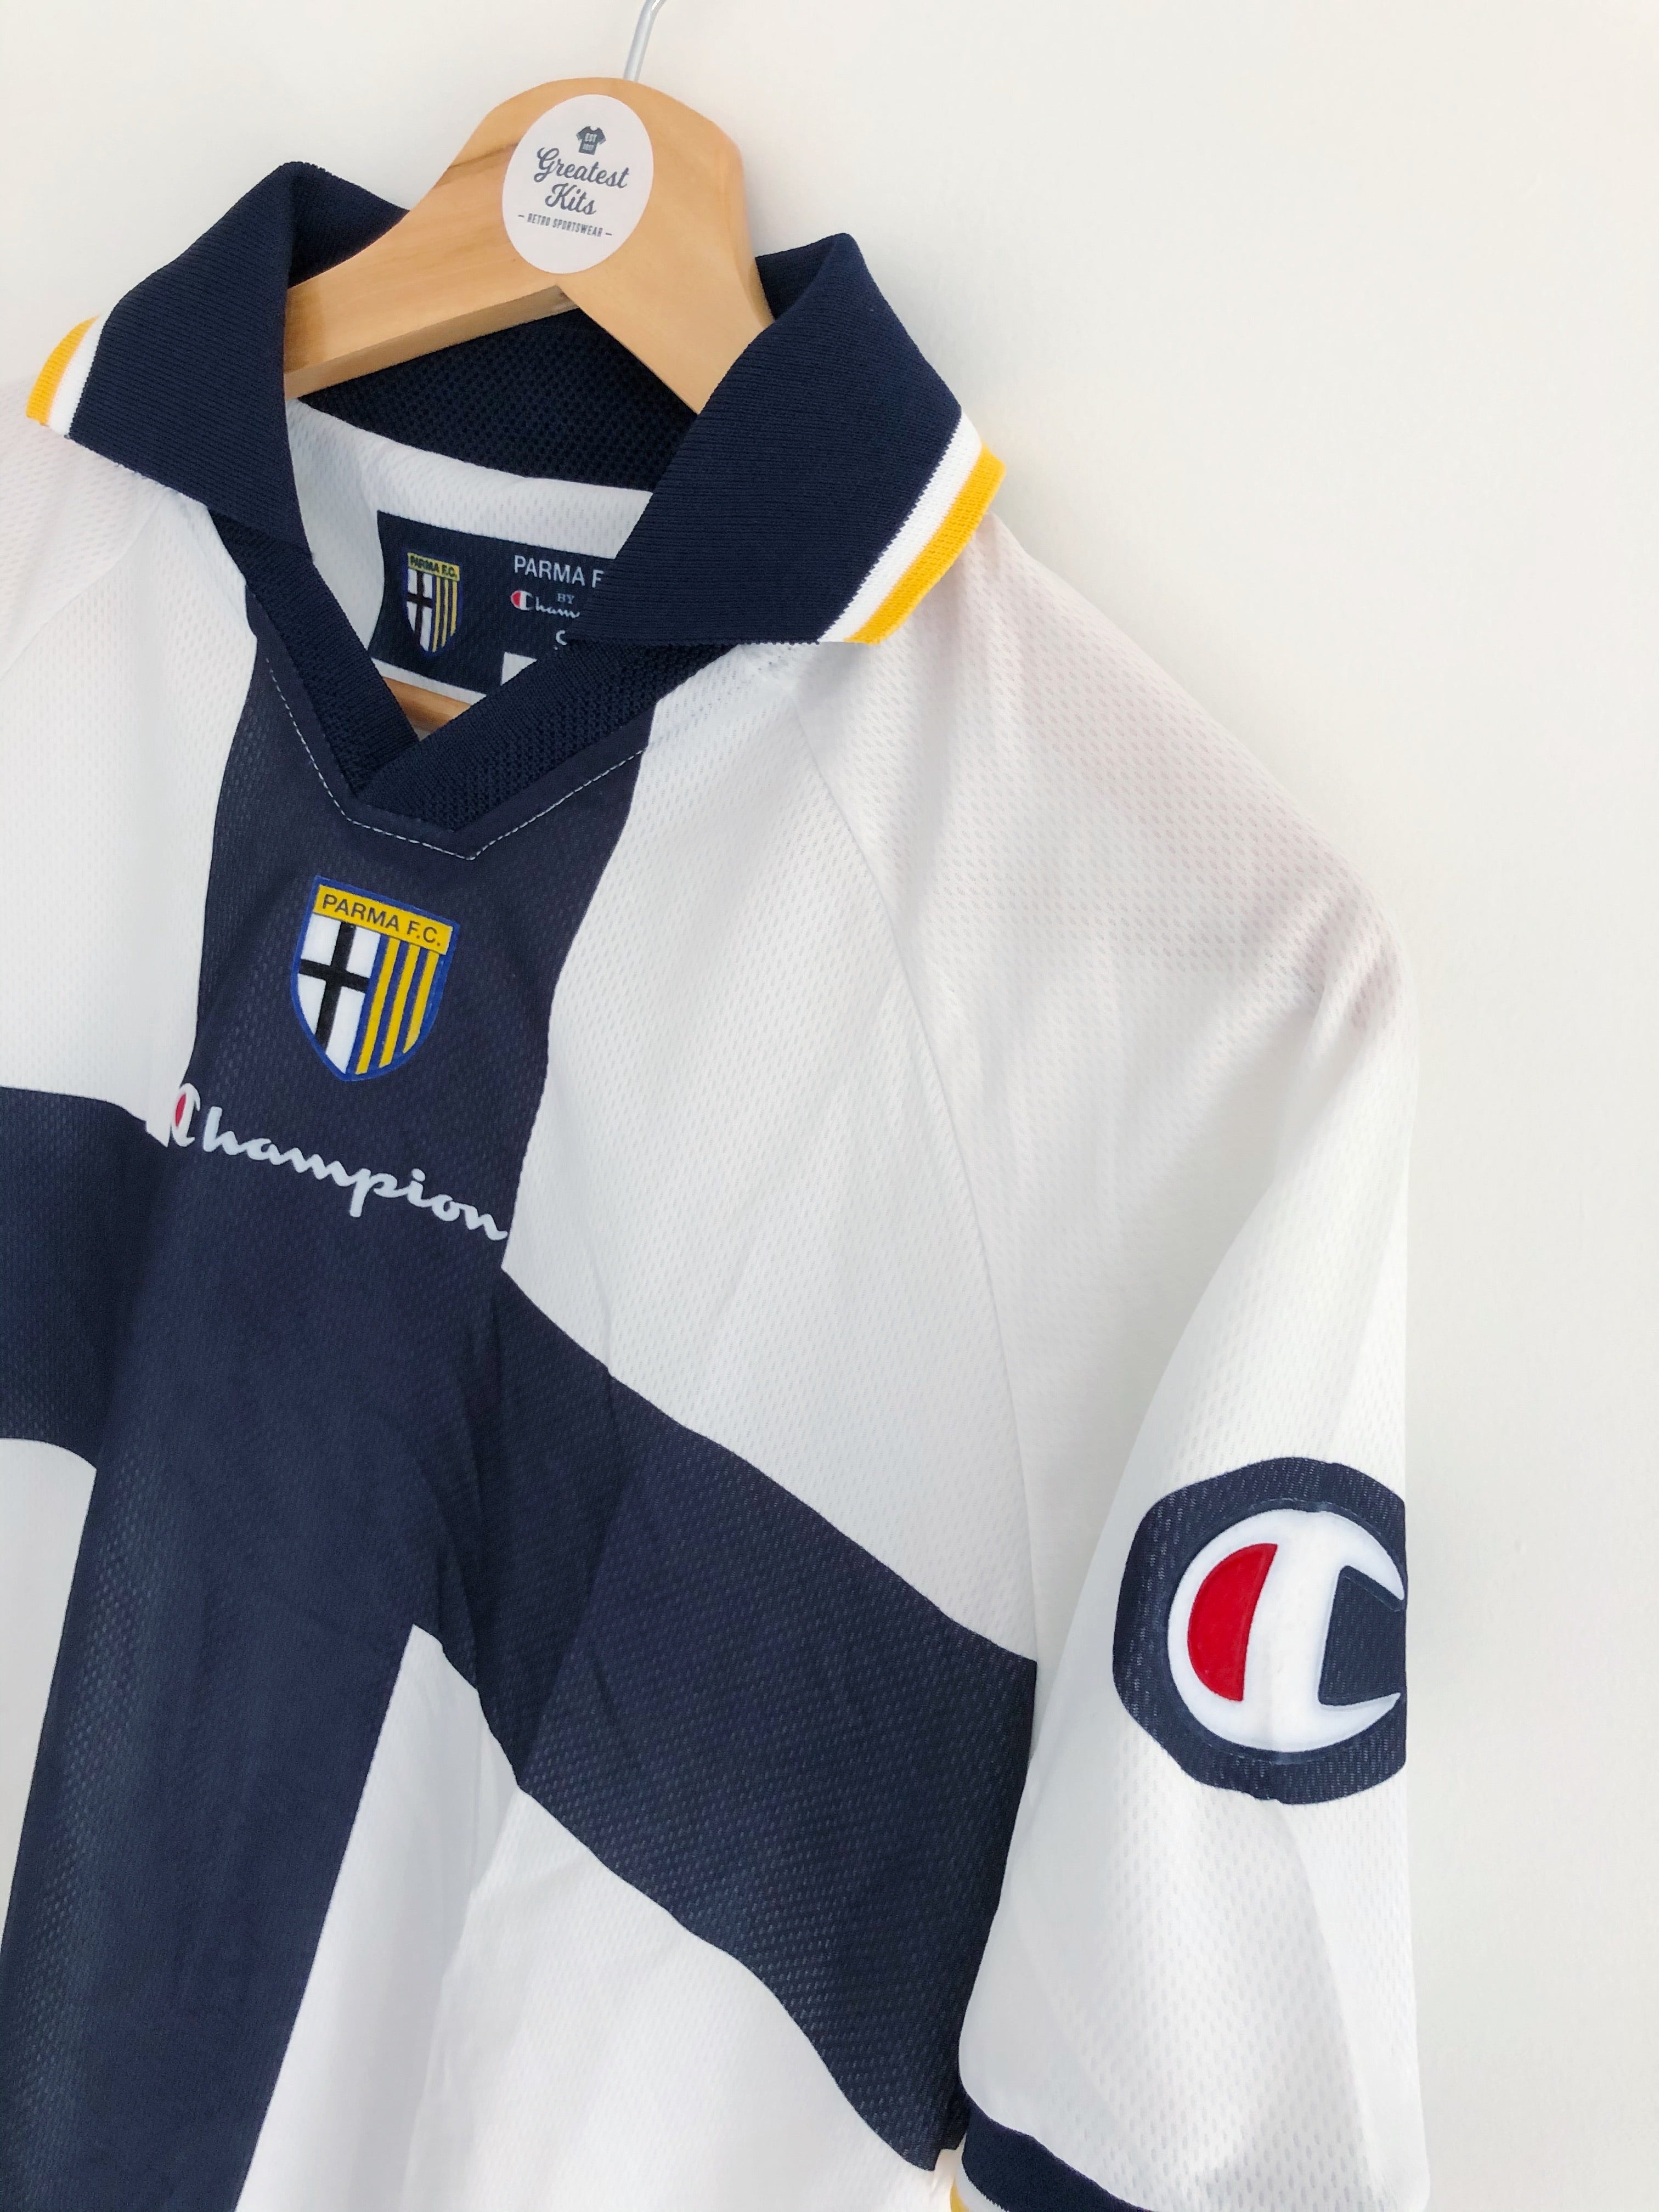 2004/05 Parma Home Shirt (S) 8.5/10